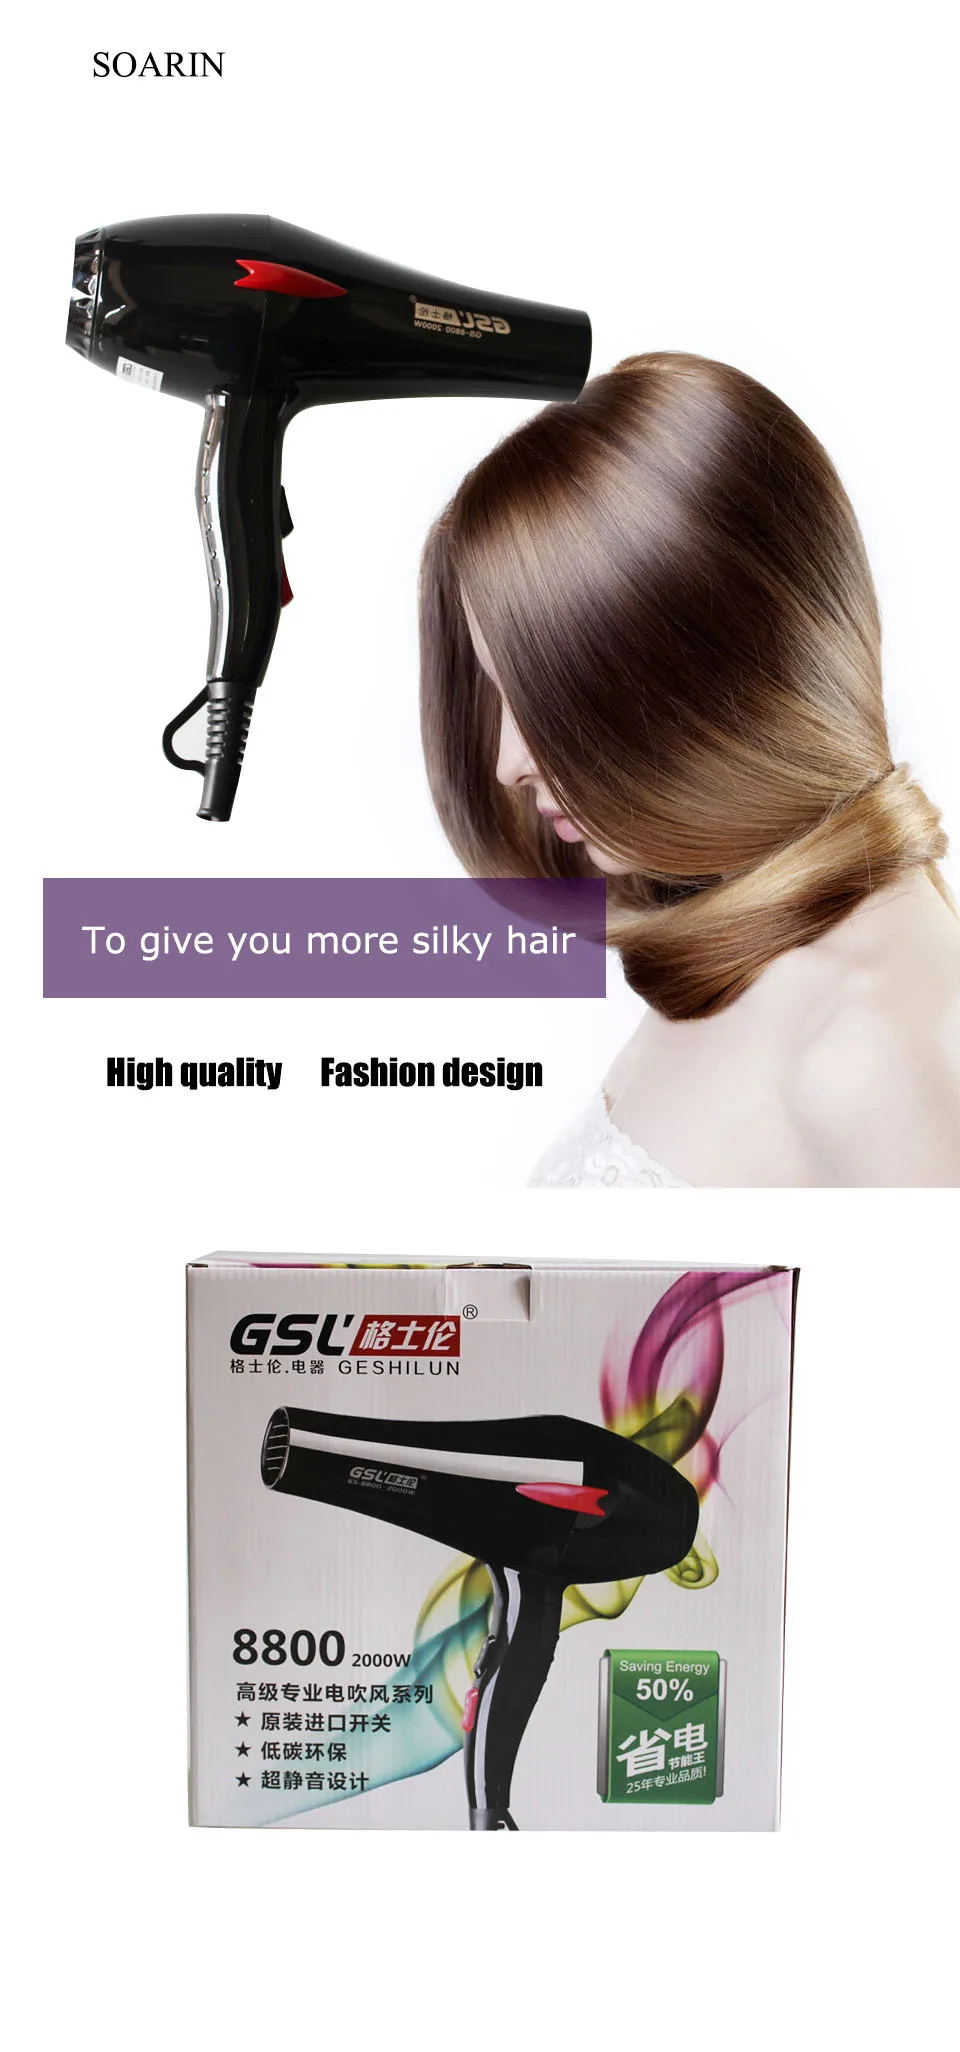 SOARIN Парикмахерская Профессиональный Мощный черные волосы сушилка, оборудование для парикмахерских салонов Профессиональный фен дома горячей/холодного воздуха